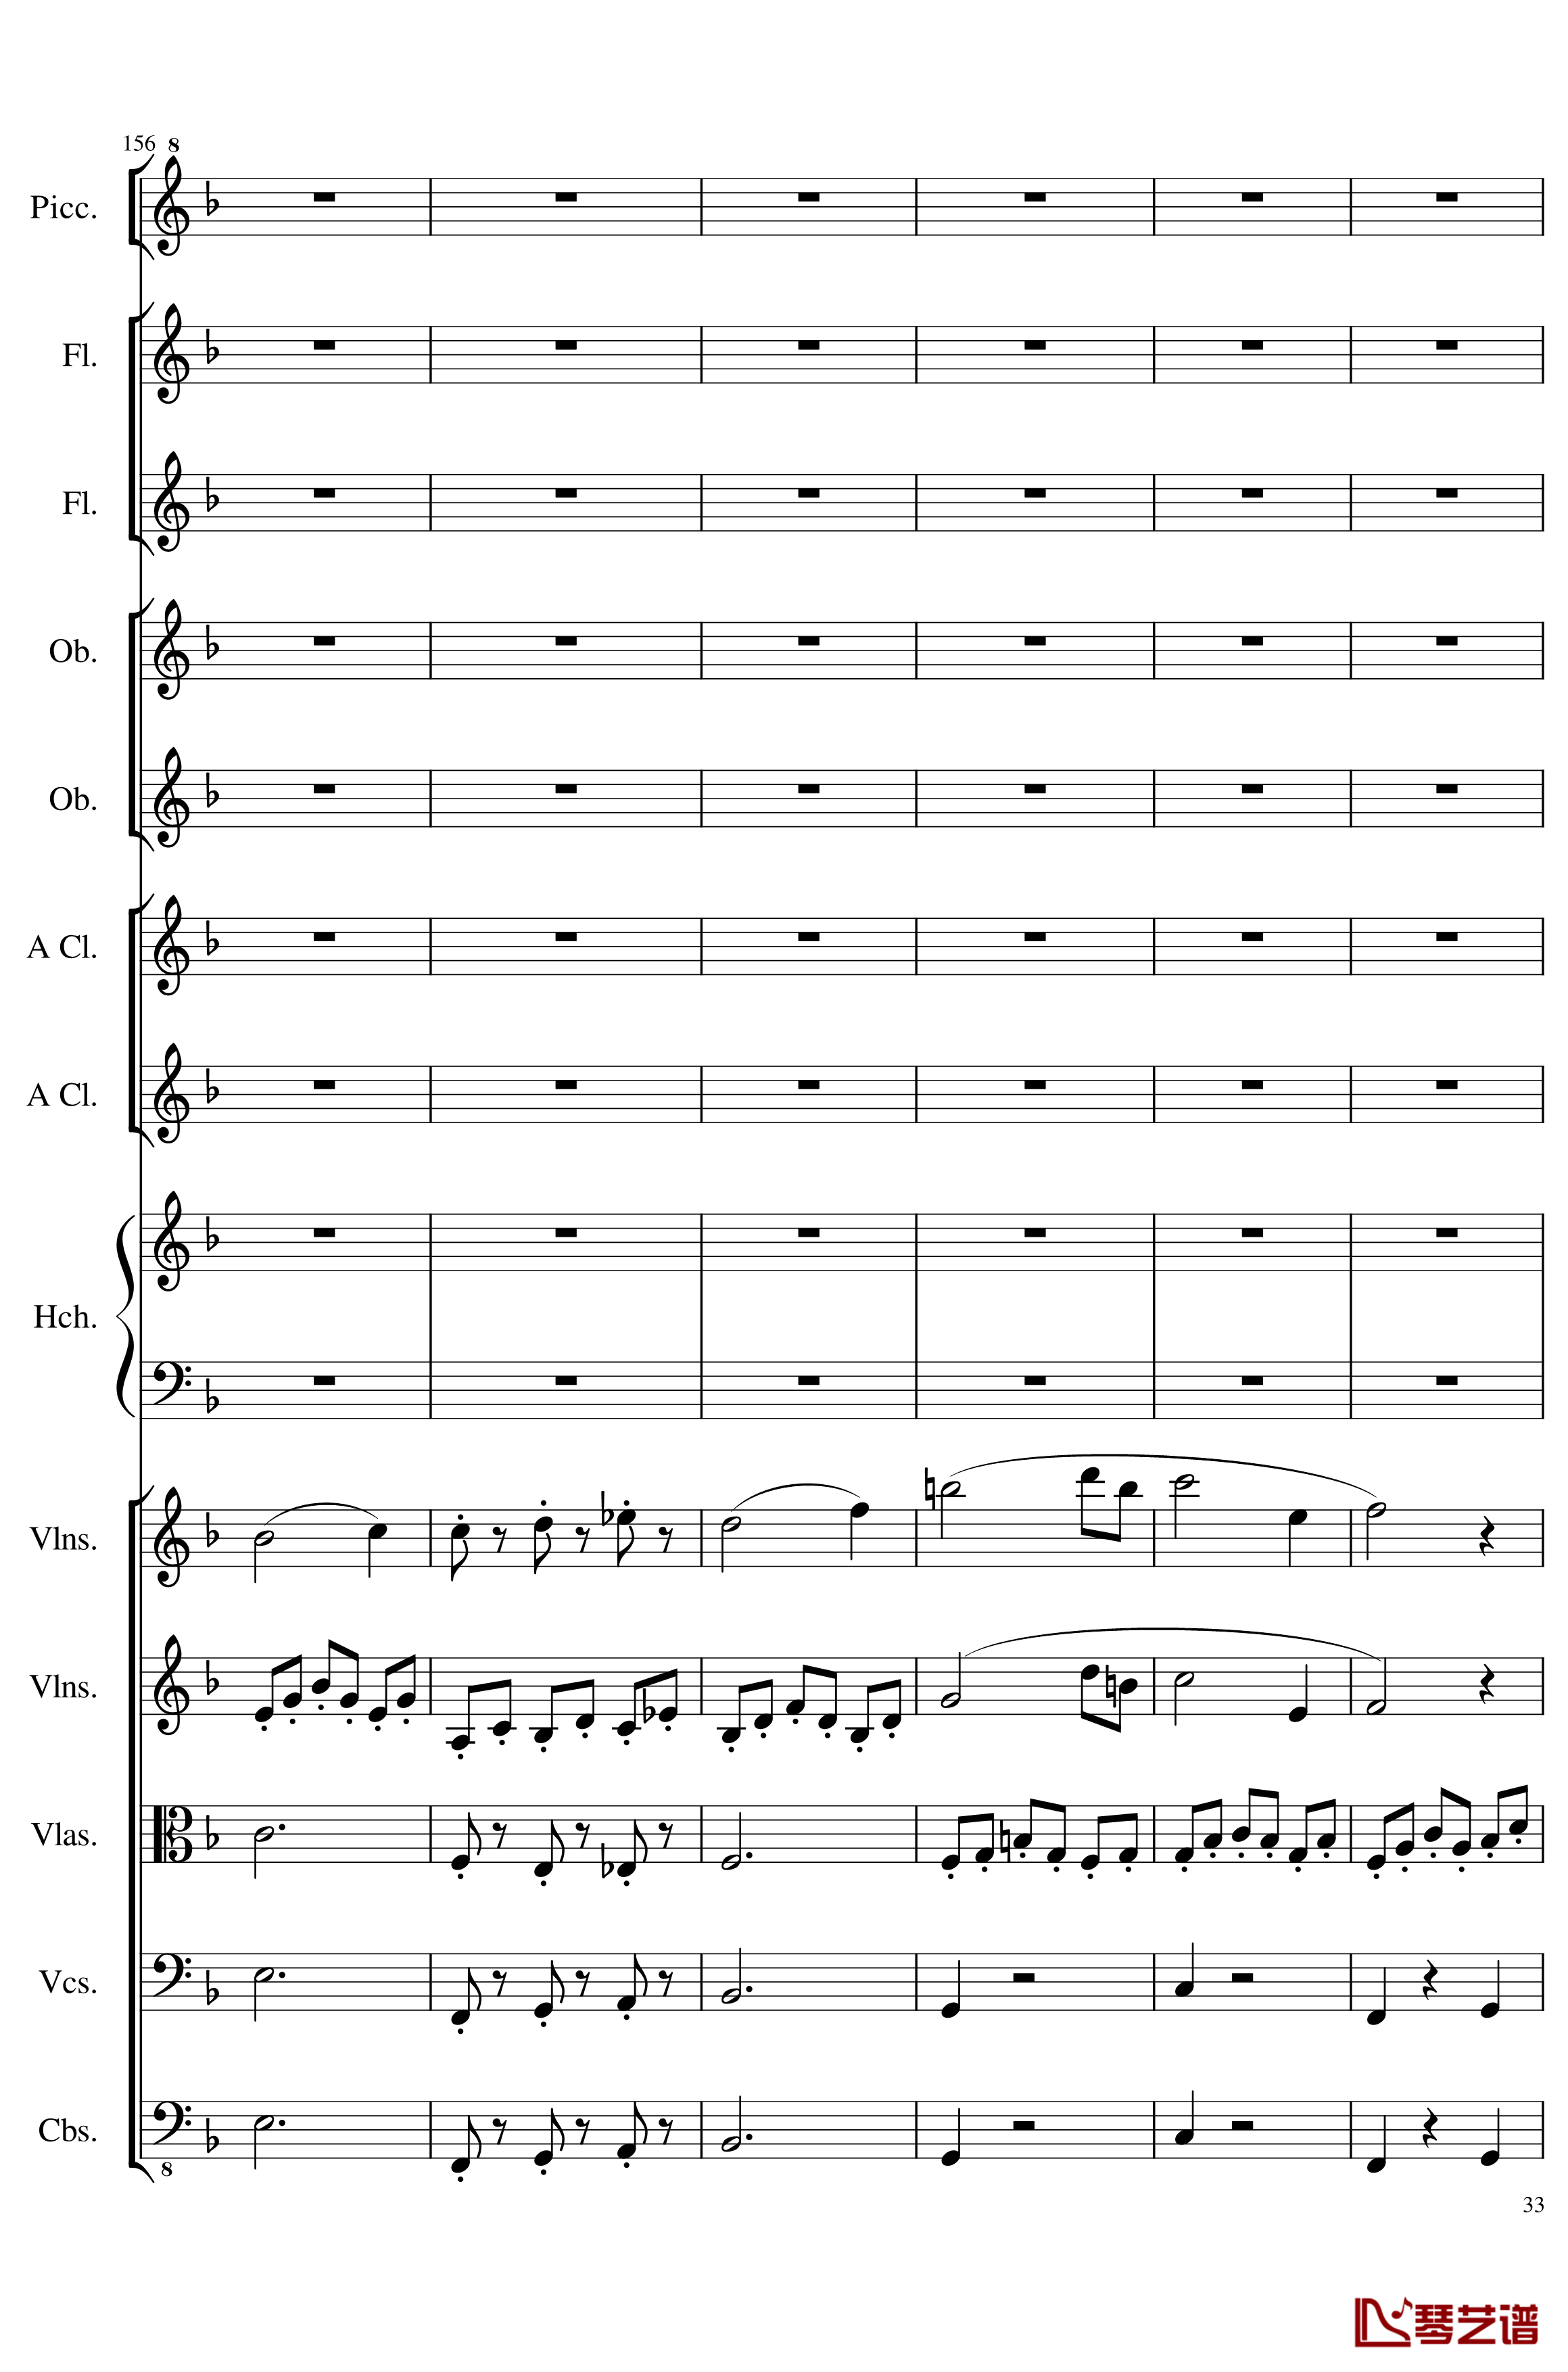 7 Contredanses No.1-7, Op.124钢琴谱-7首乡村舞曲，第一至第七，作品124-一个球33